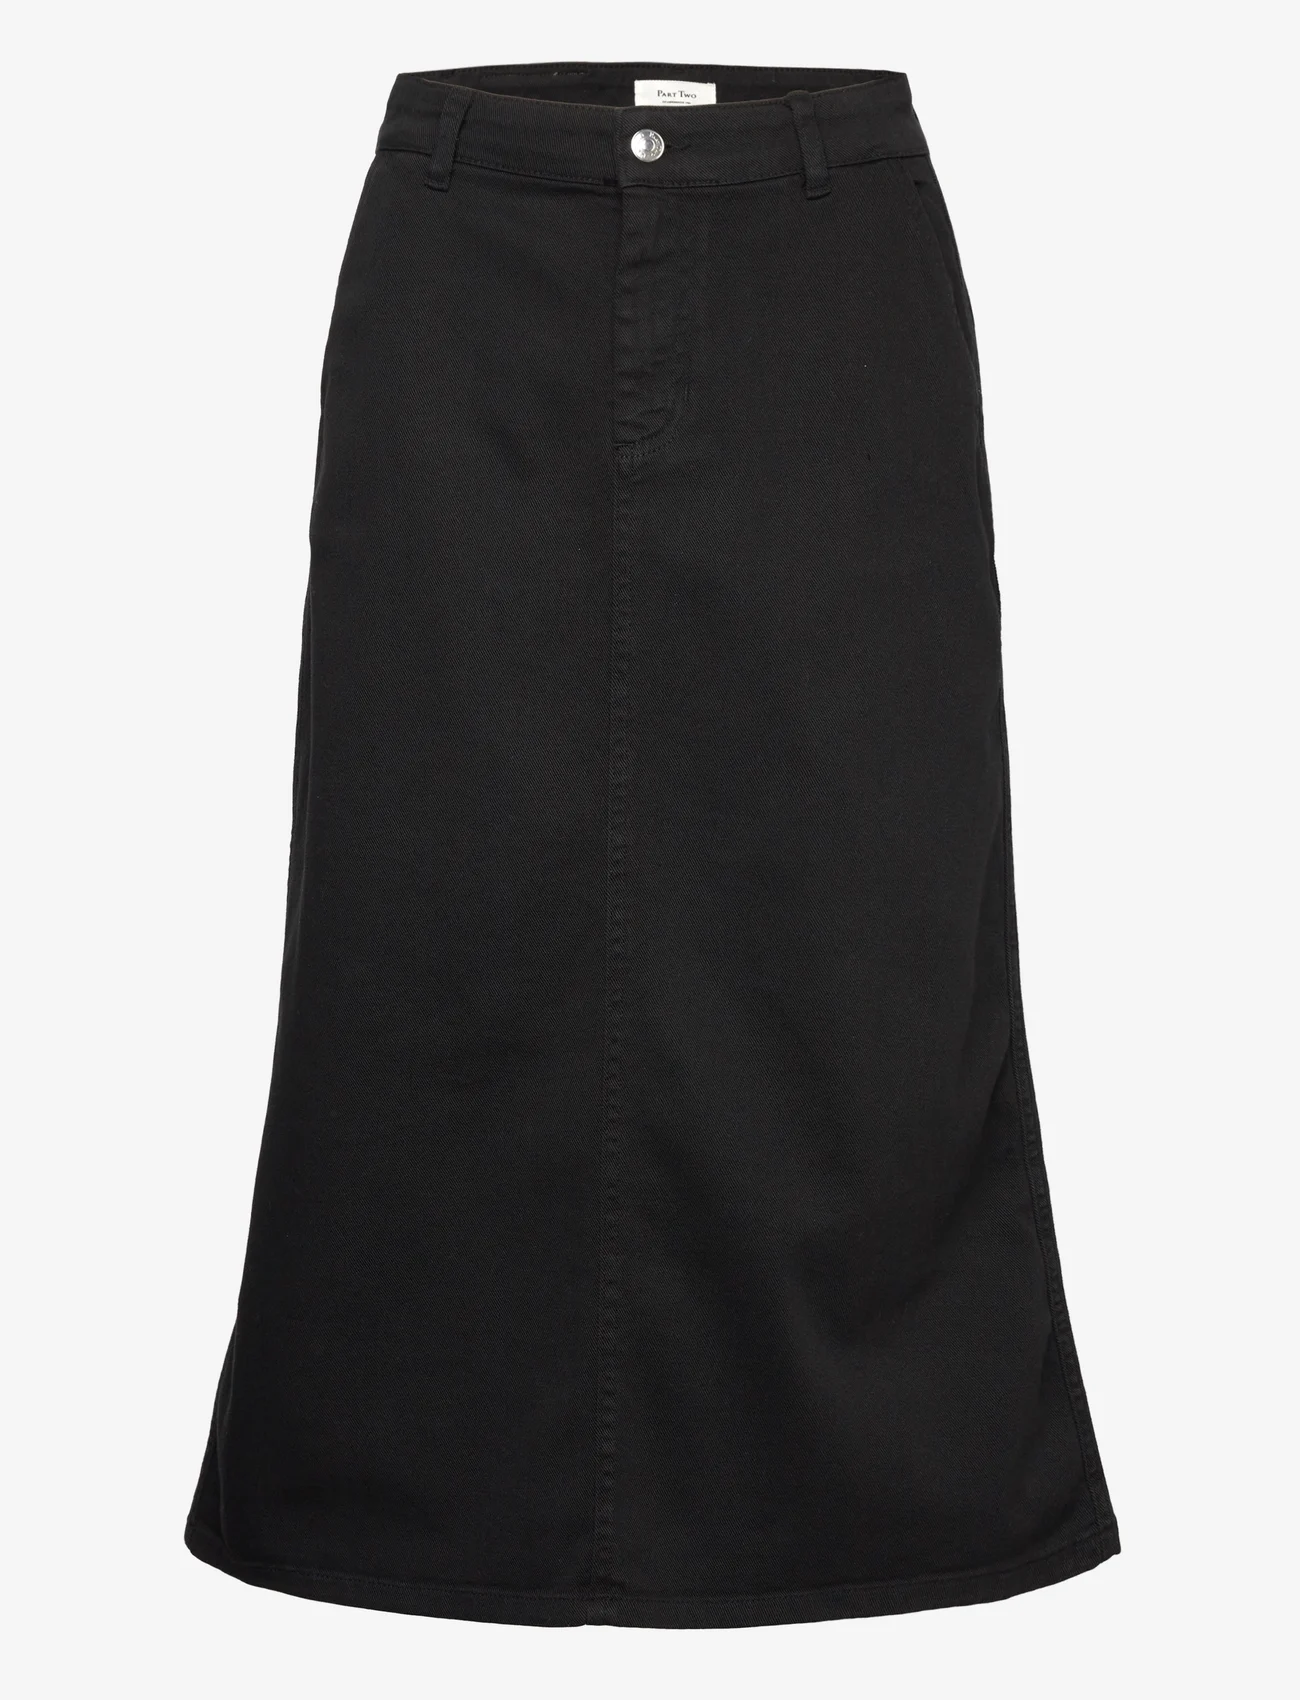 Part Two - SiyaPW SK - denim skirts - black - 0